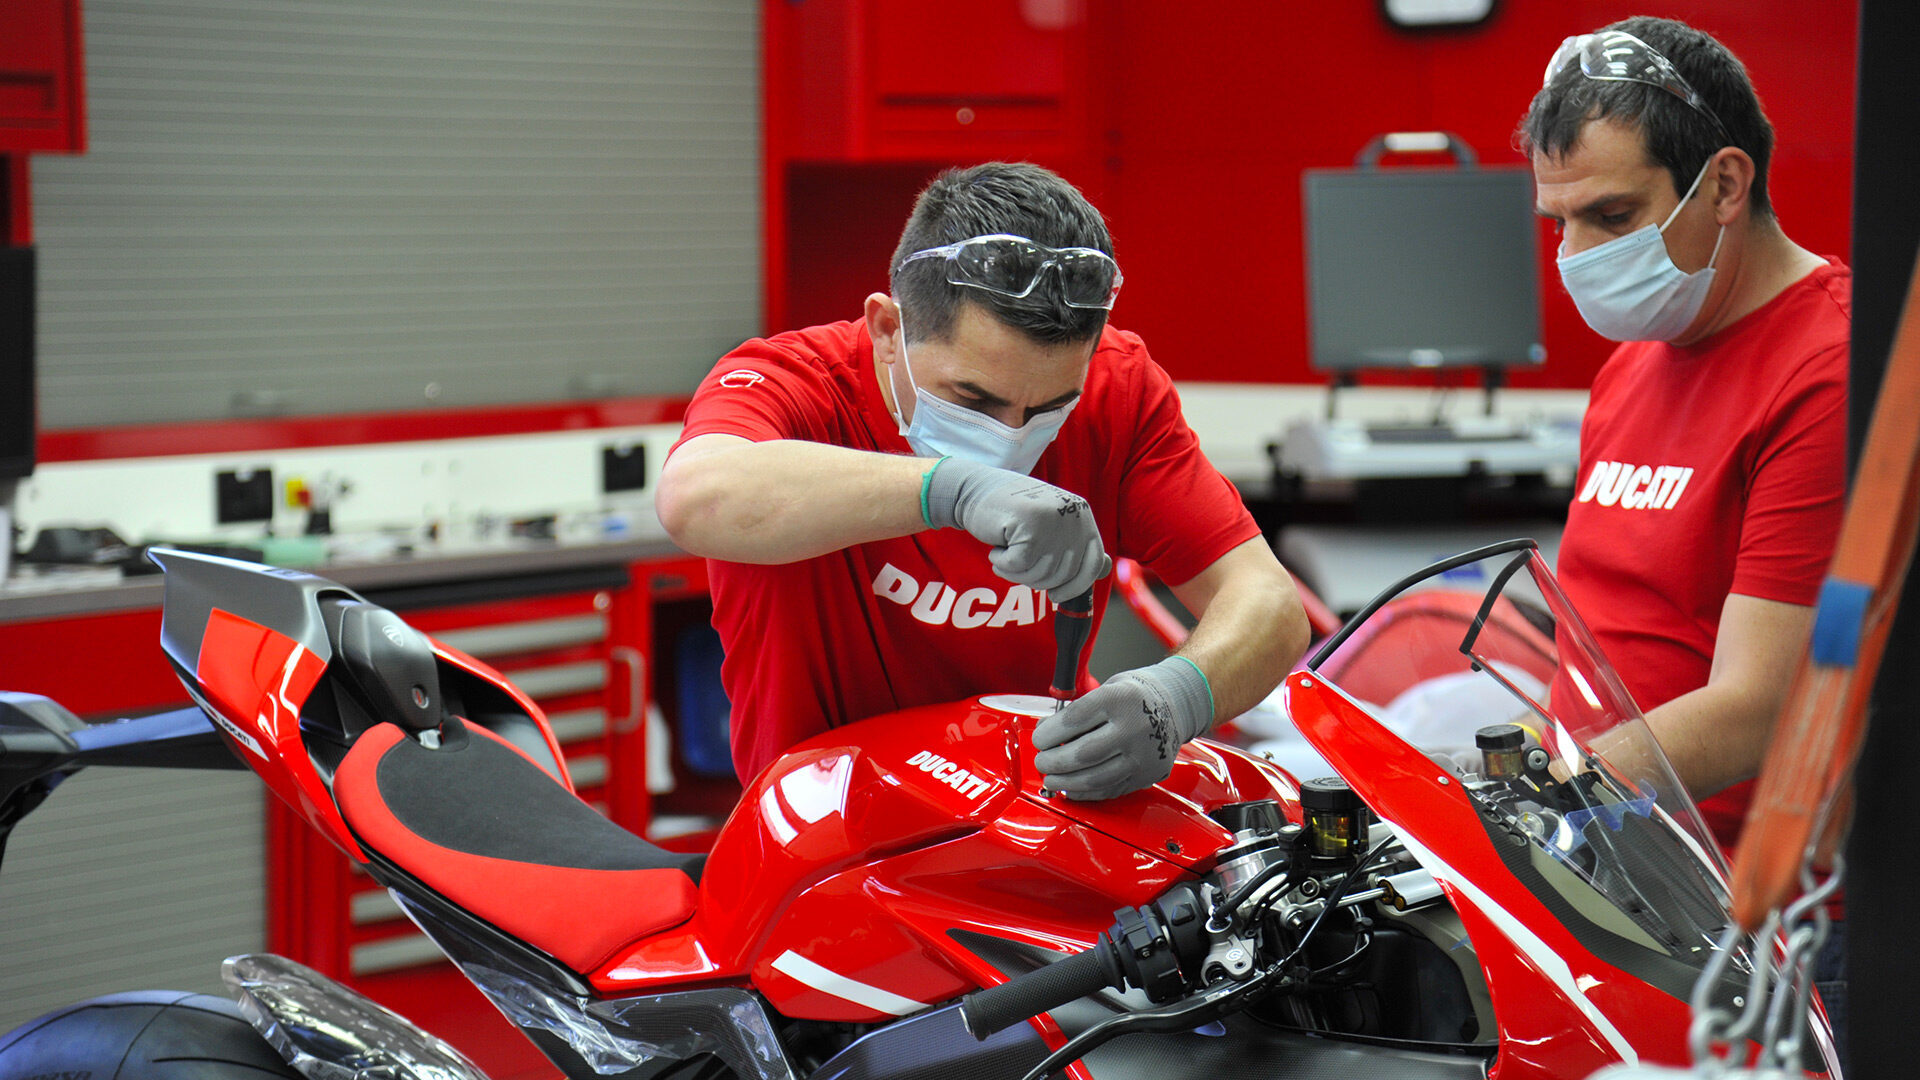 Melhor fábrica de motos italiana: dentro da linha de produção da Ducati construindo motos com as mãos